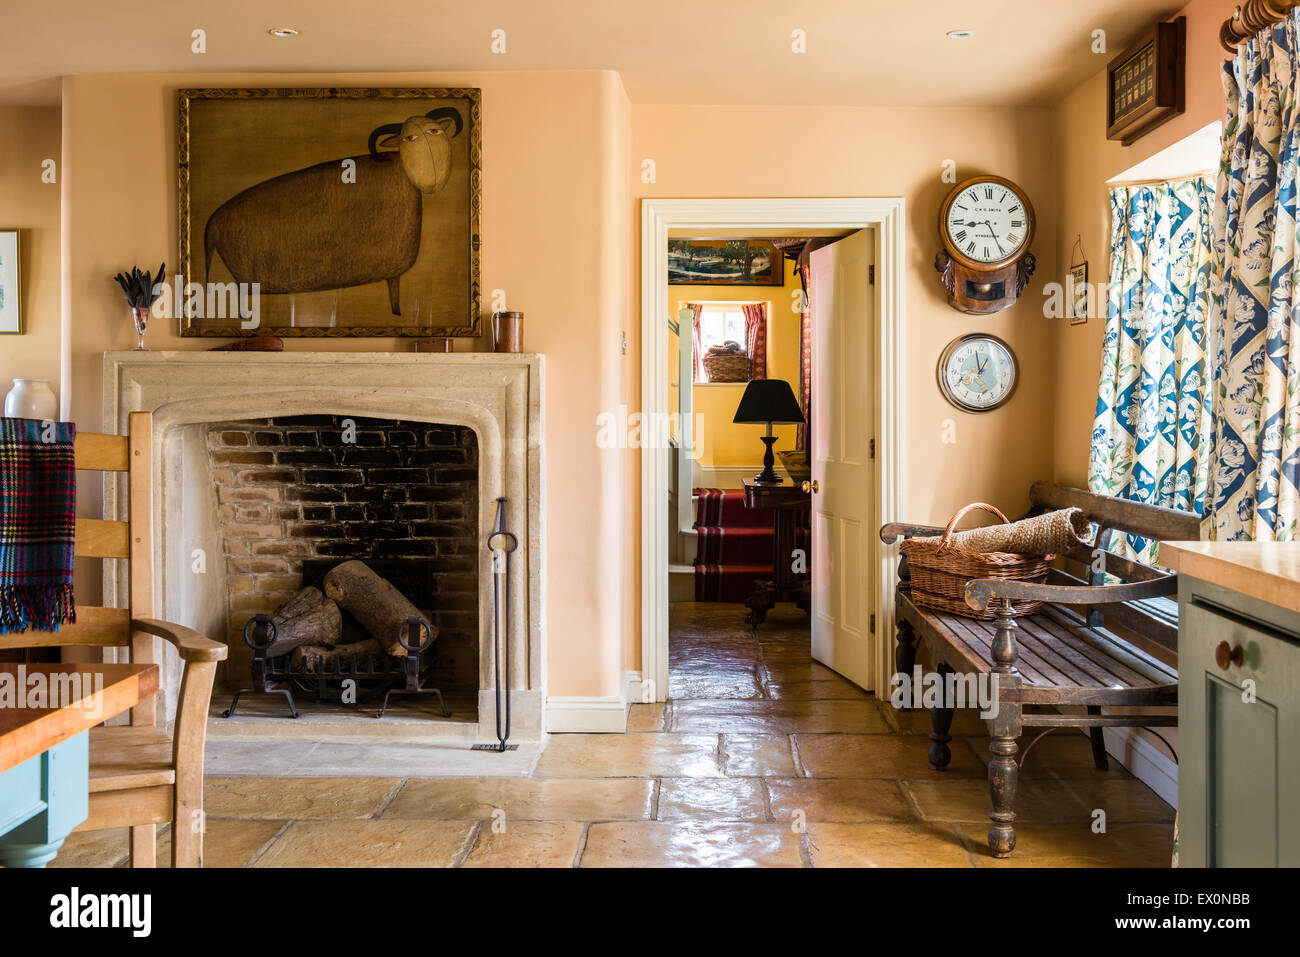 Camino con focolare aperto in cucina con pavimenti in lastricato Foto Stock